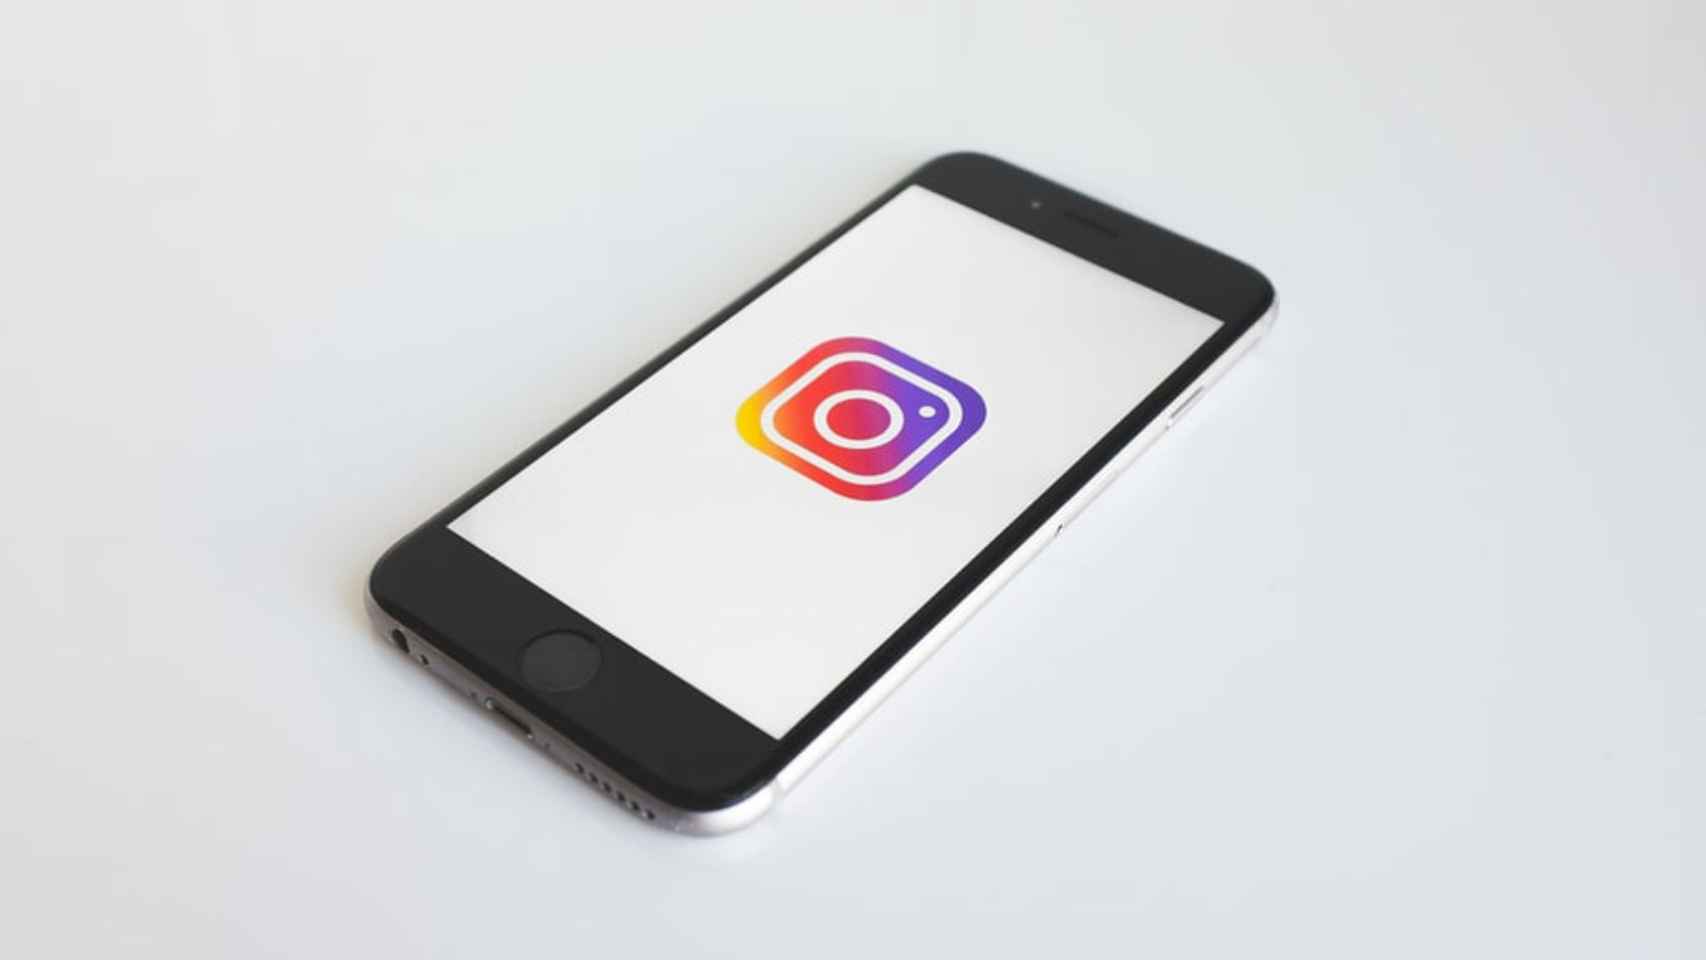 Logo de Instagram en un móvil.